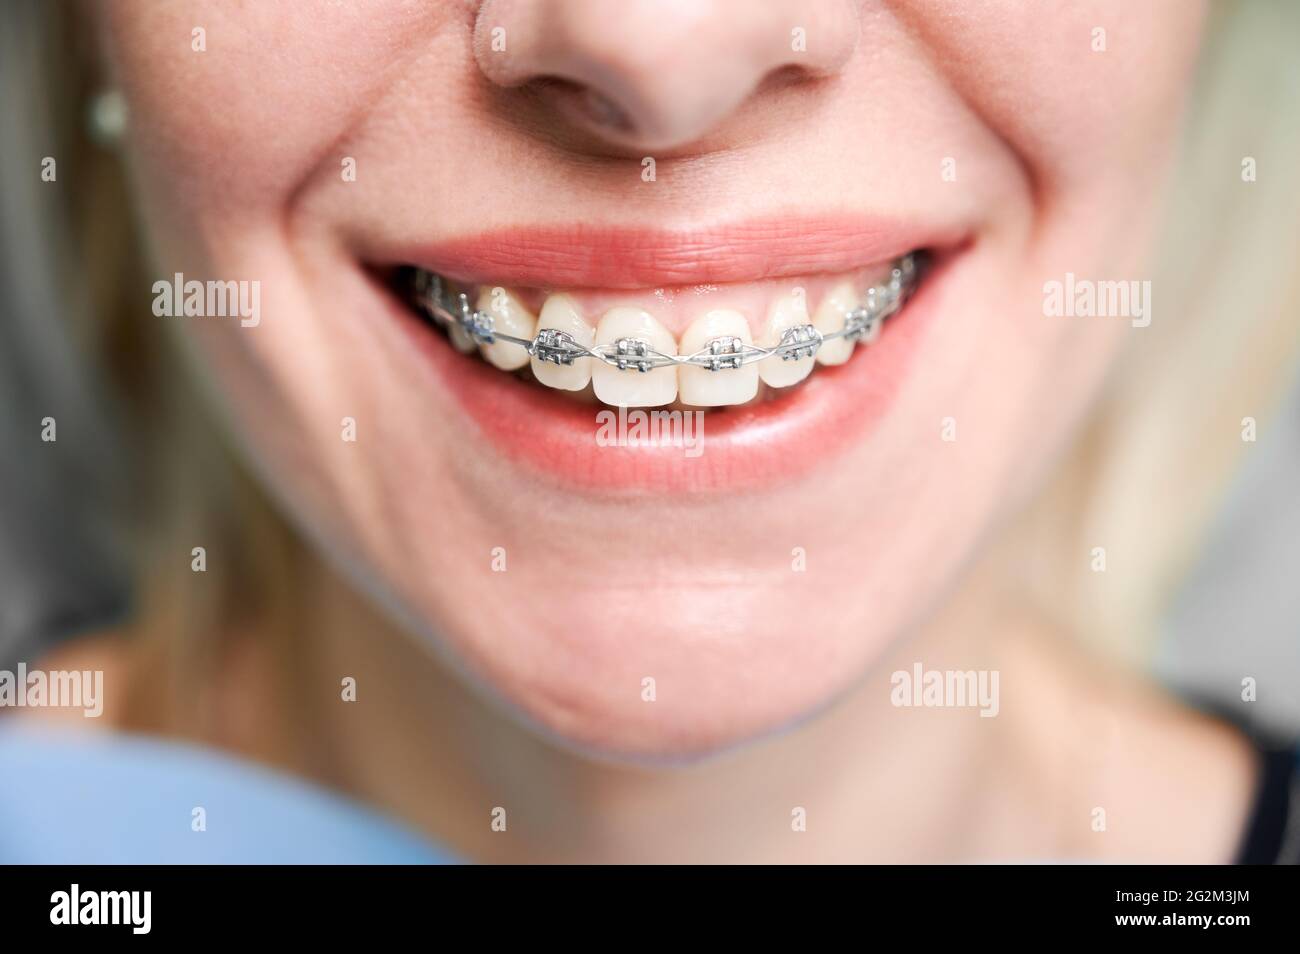 Primo piano di donna con un sorriso affascinante che mostra denti bianchi con staffe ortodontiche. Paziente di sesso femminile che mostra i risultati del trattamento con i rinforzi dentali. Concetto di trattamento ortodontico e odontoiatria. Foto Stock